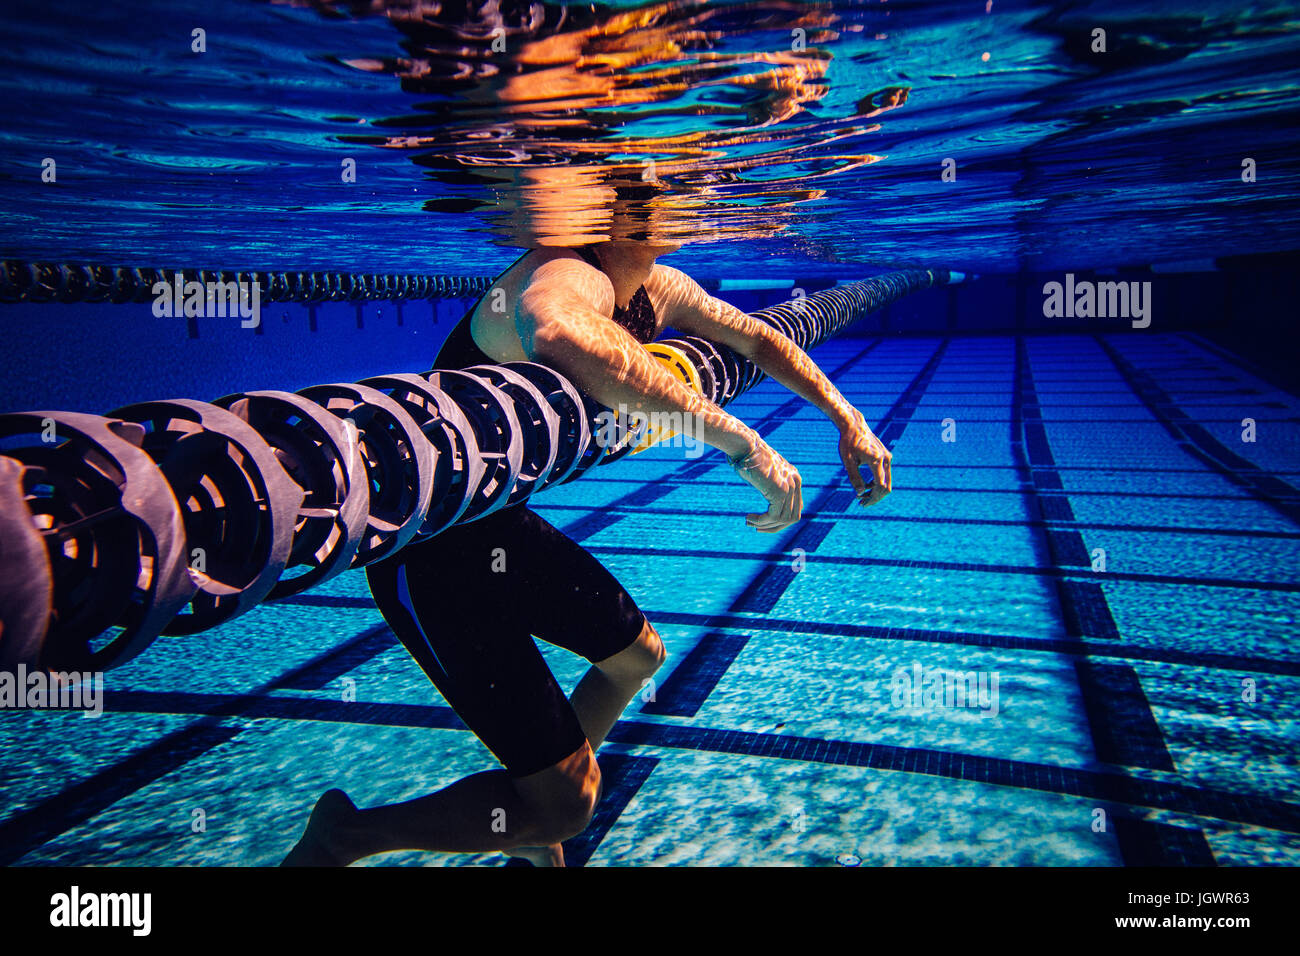 Swimmer resting on lane divider in pool